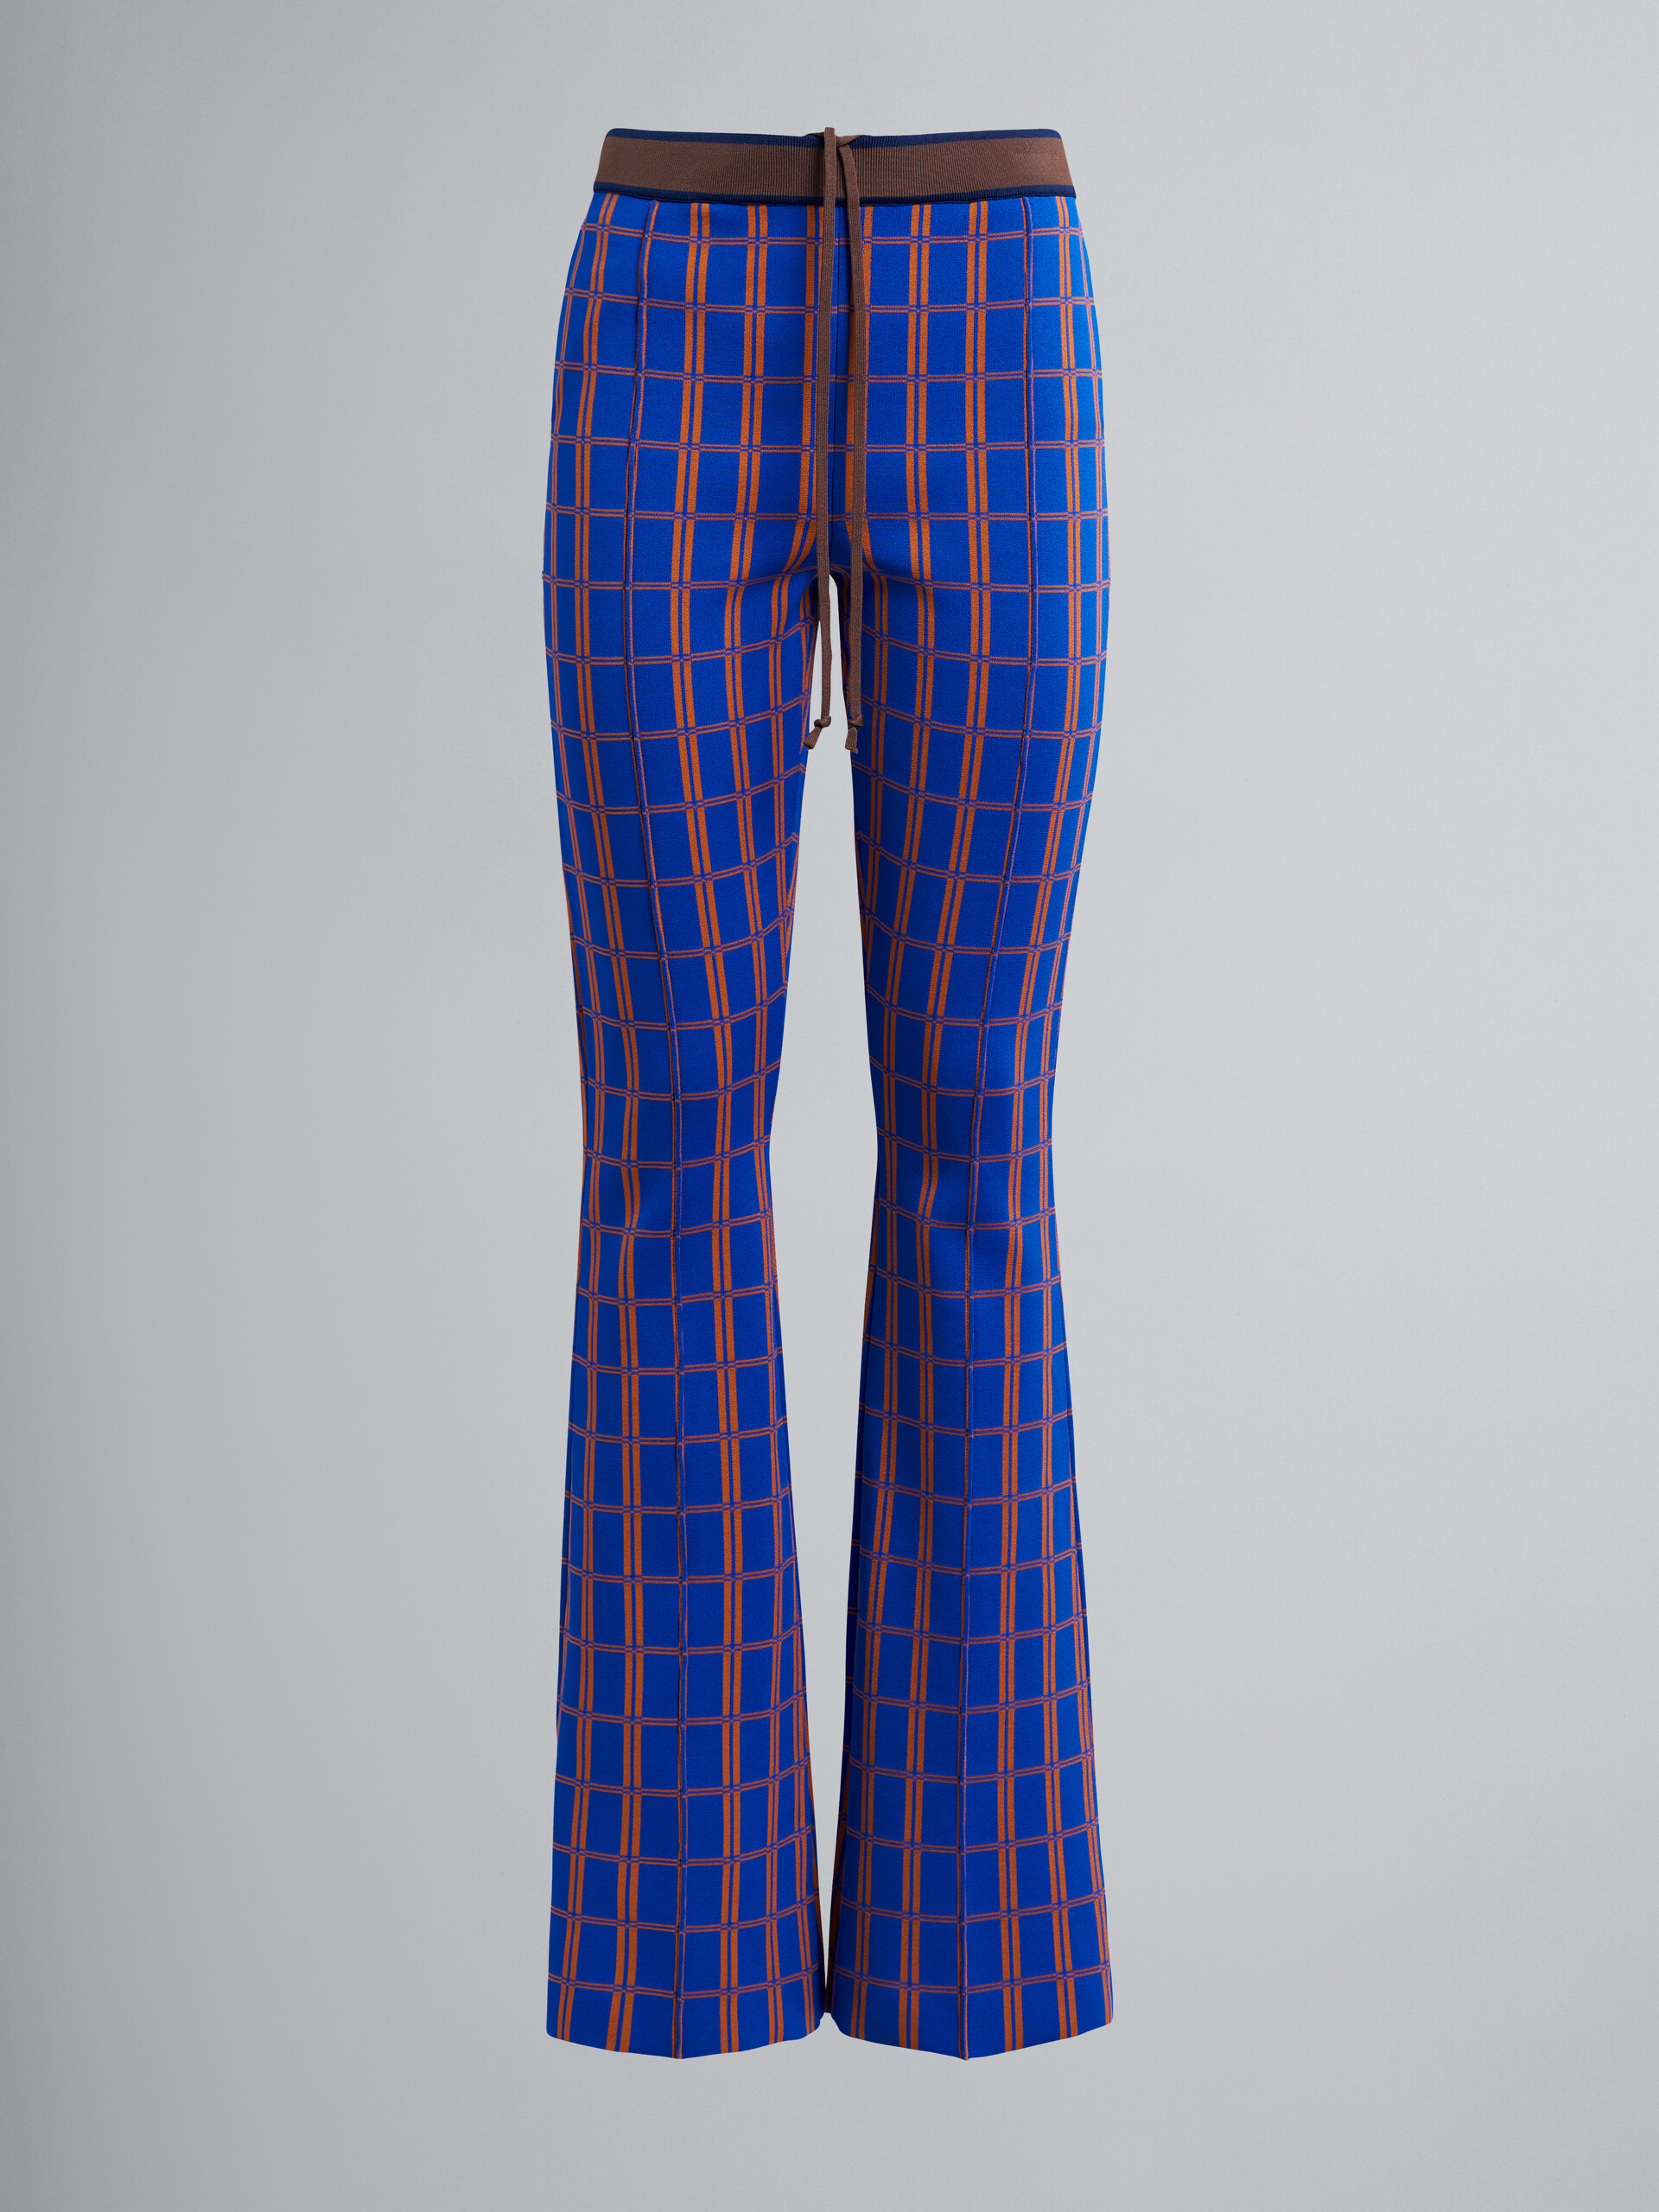 Bi-coloured jacquard trousers - Pants - Image 1